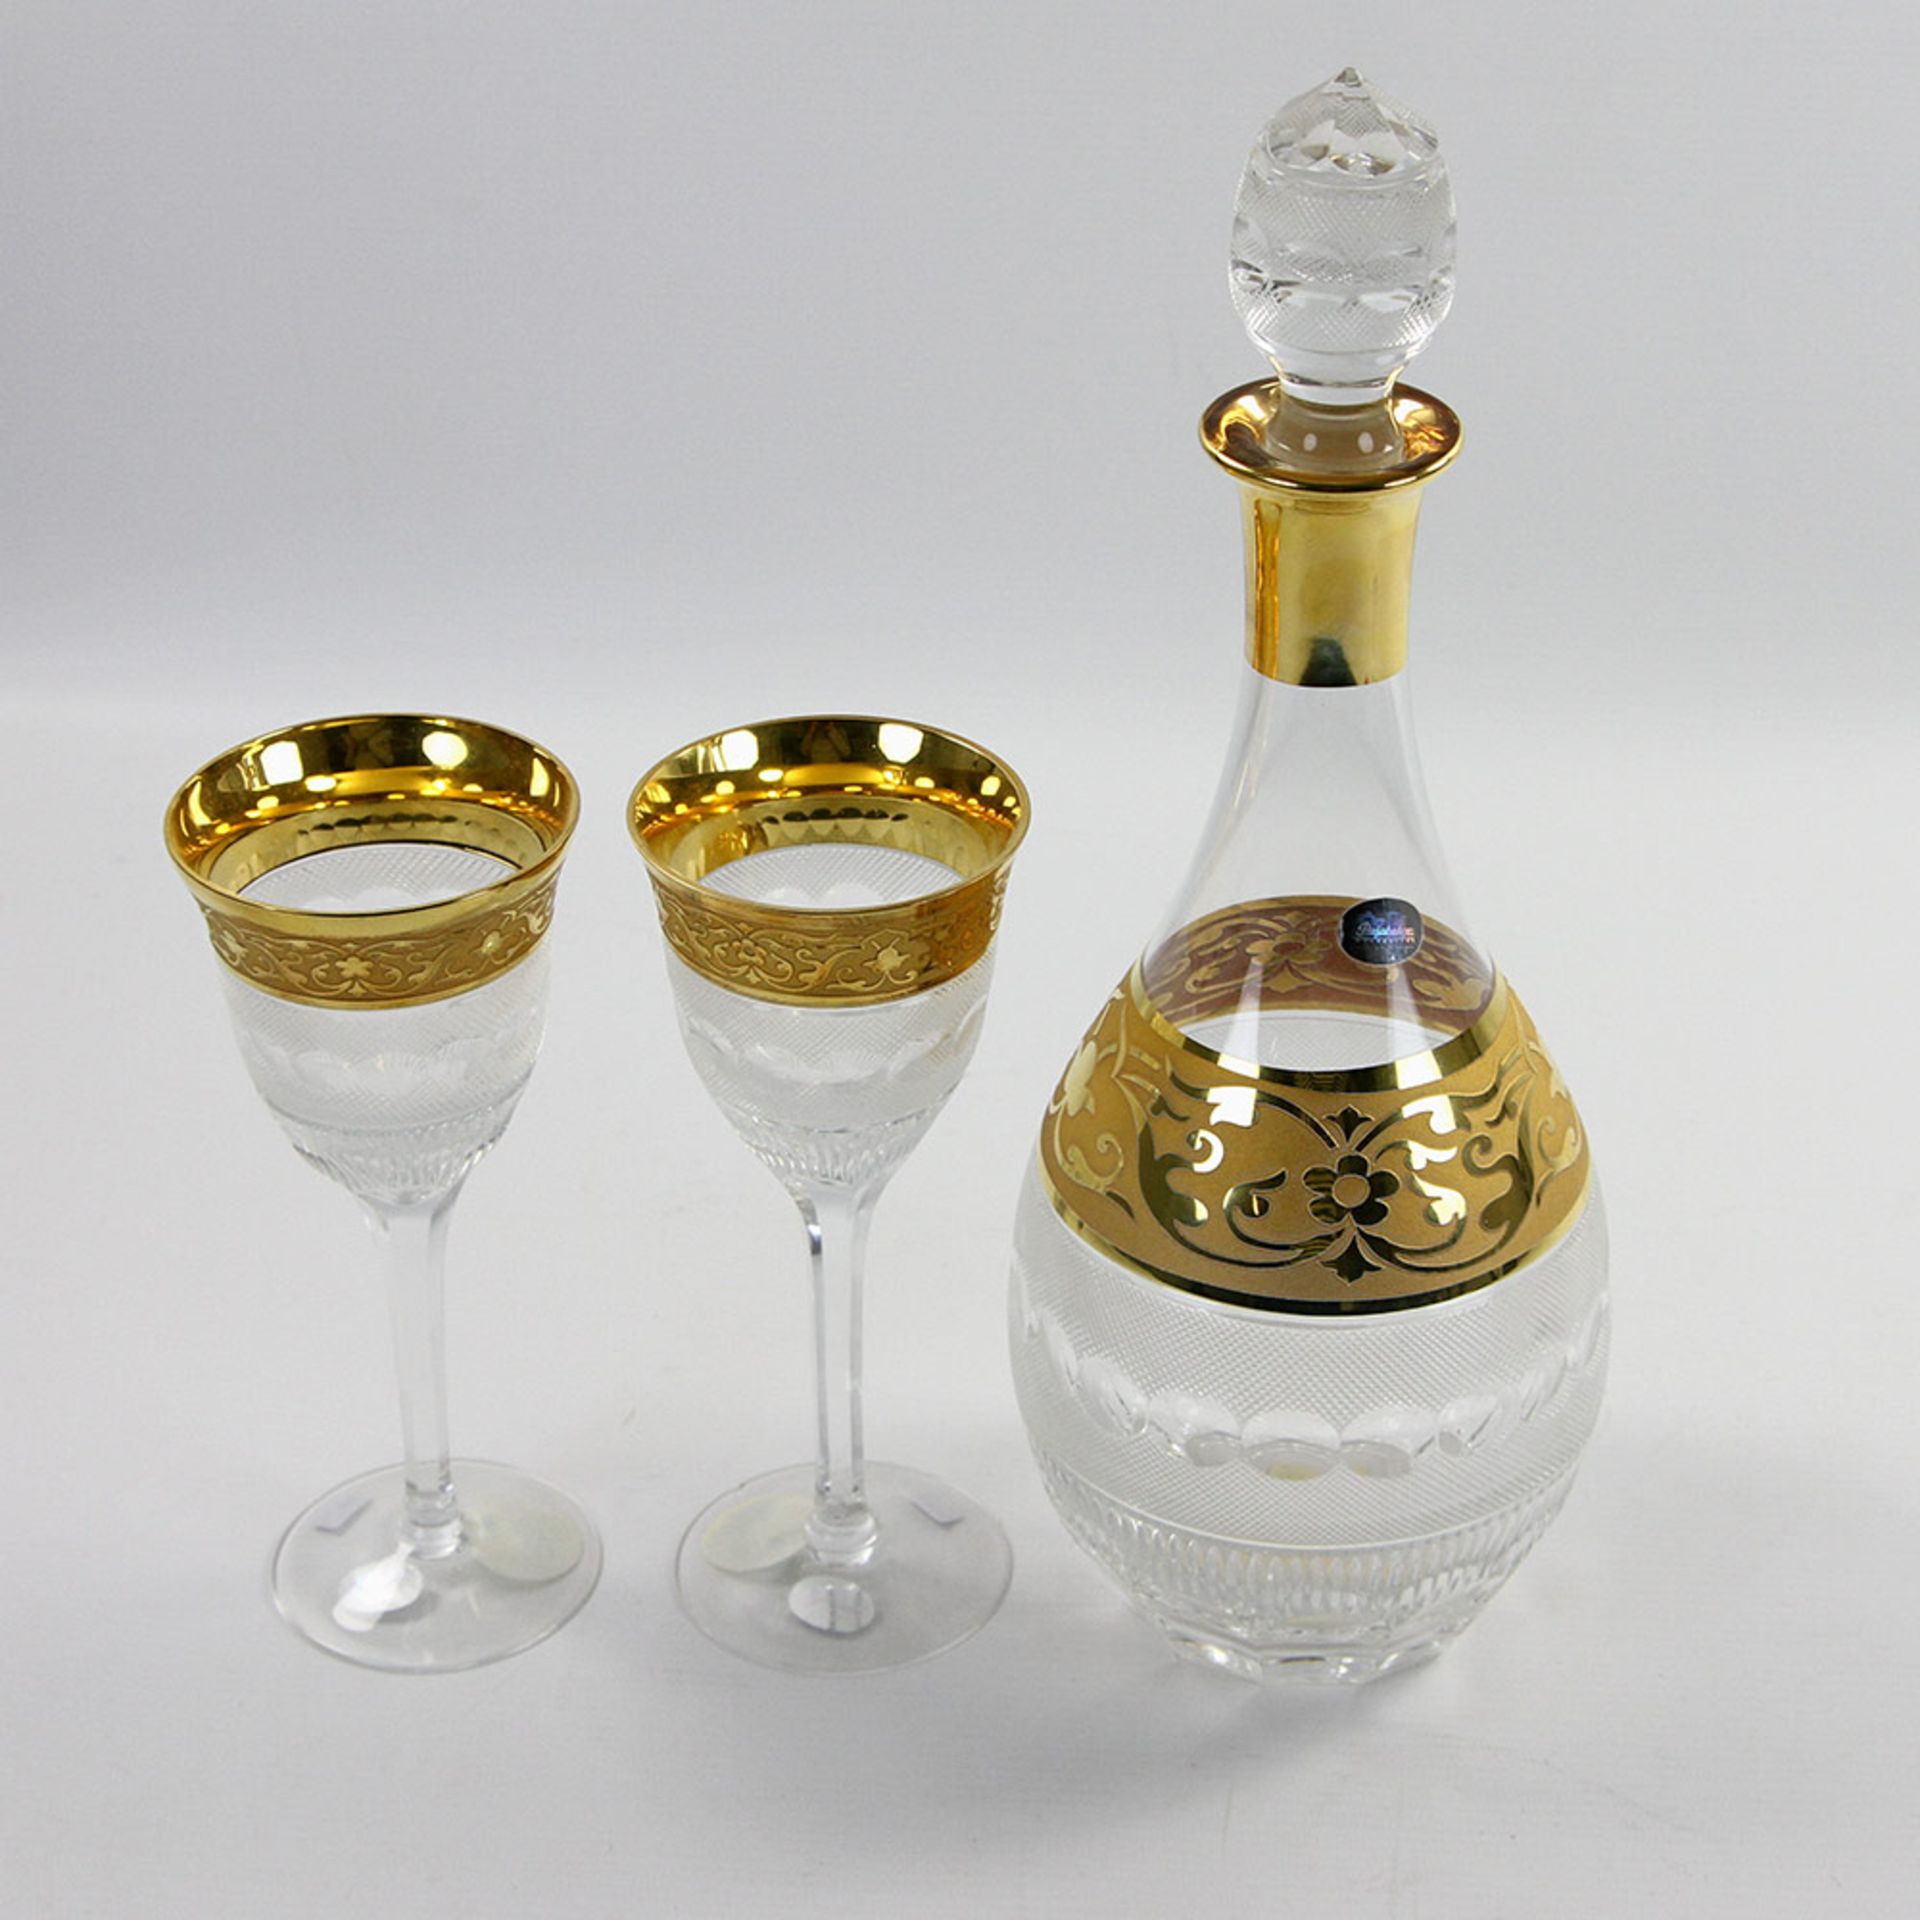 PASABAHCE Stöpselkaraffe mit zwei Gläsern, 20. Jh. Farbloses Glas mit Schliff- und reliefiertem